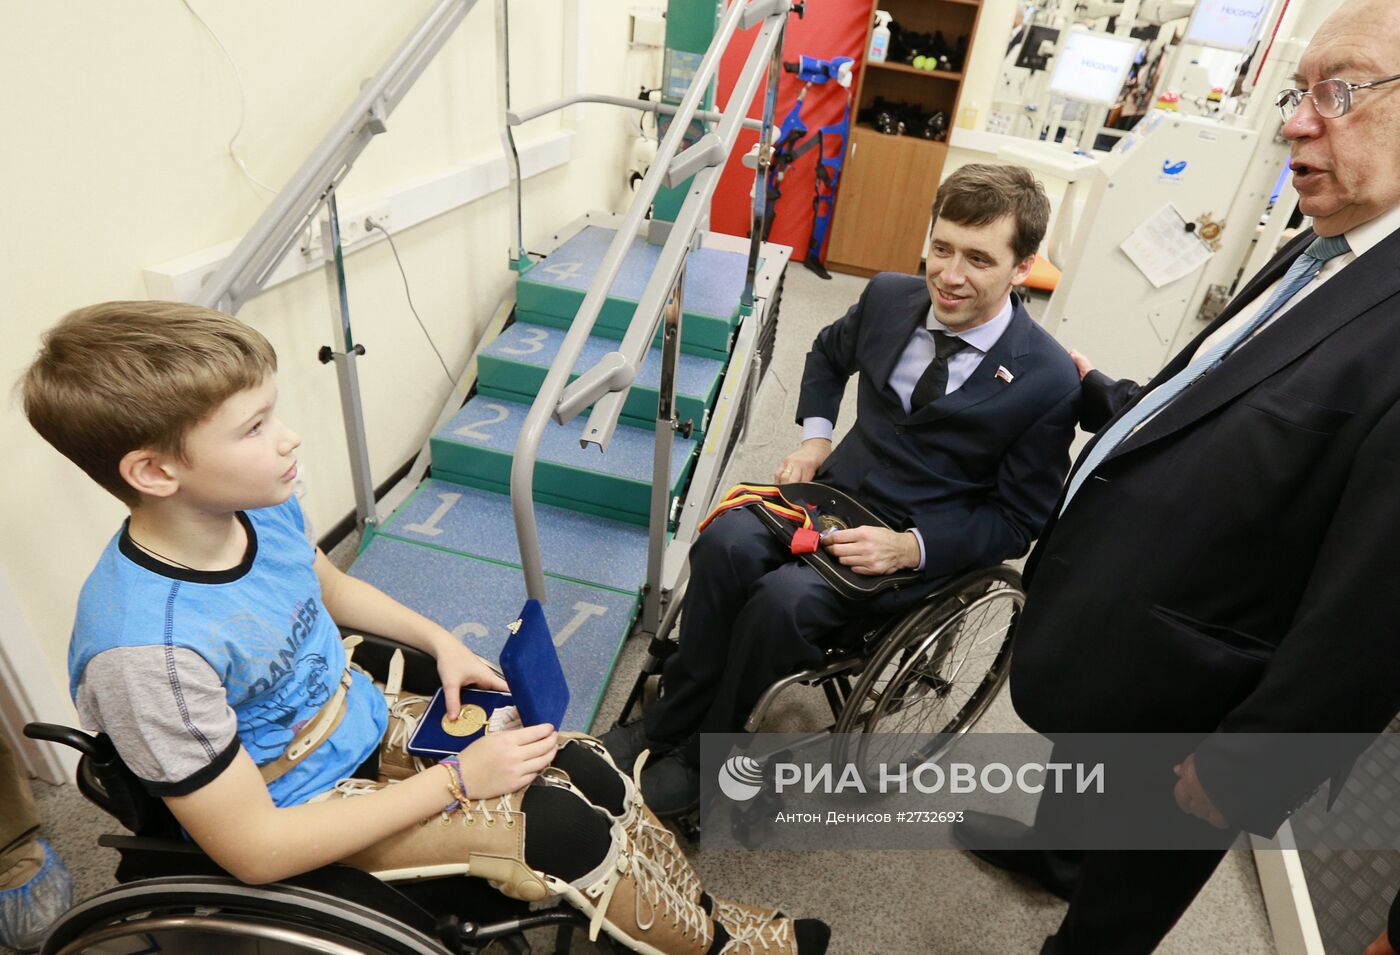 Паралимпийский комитет России взял шефство над 11-летним мальчиком